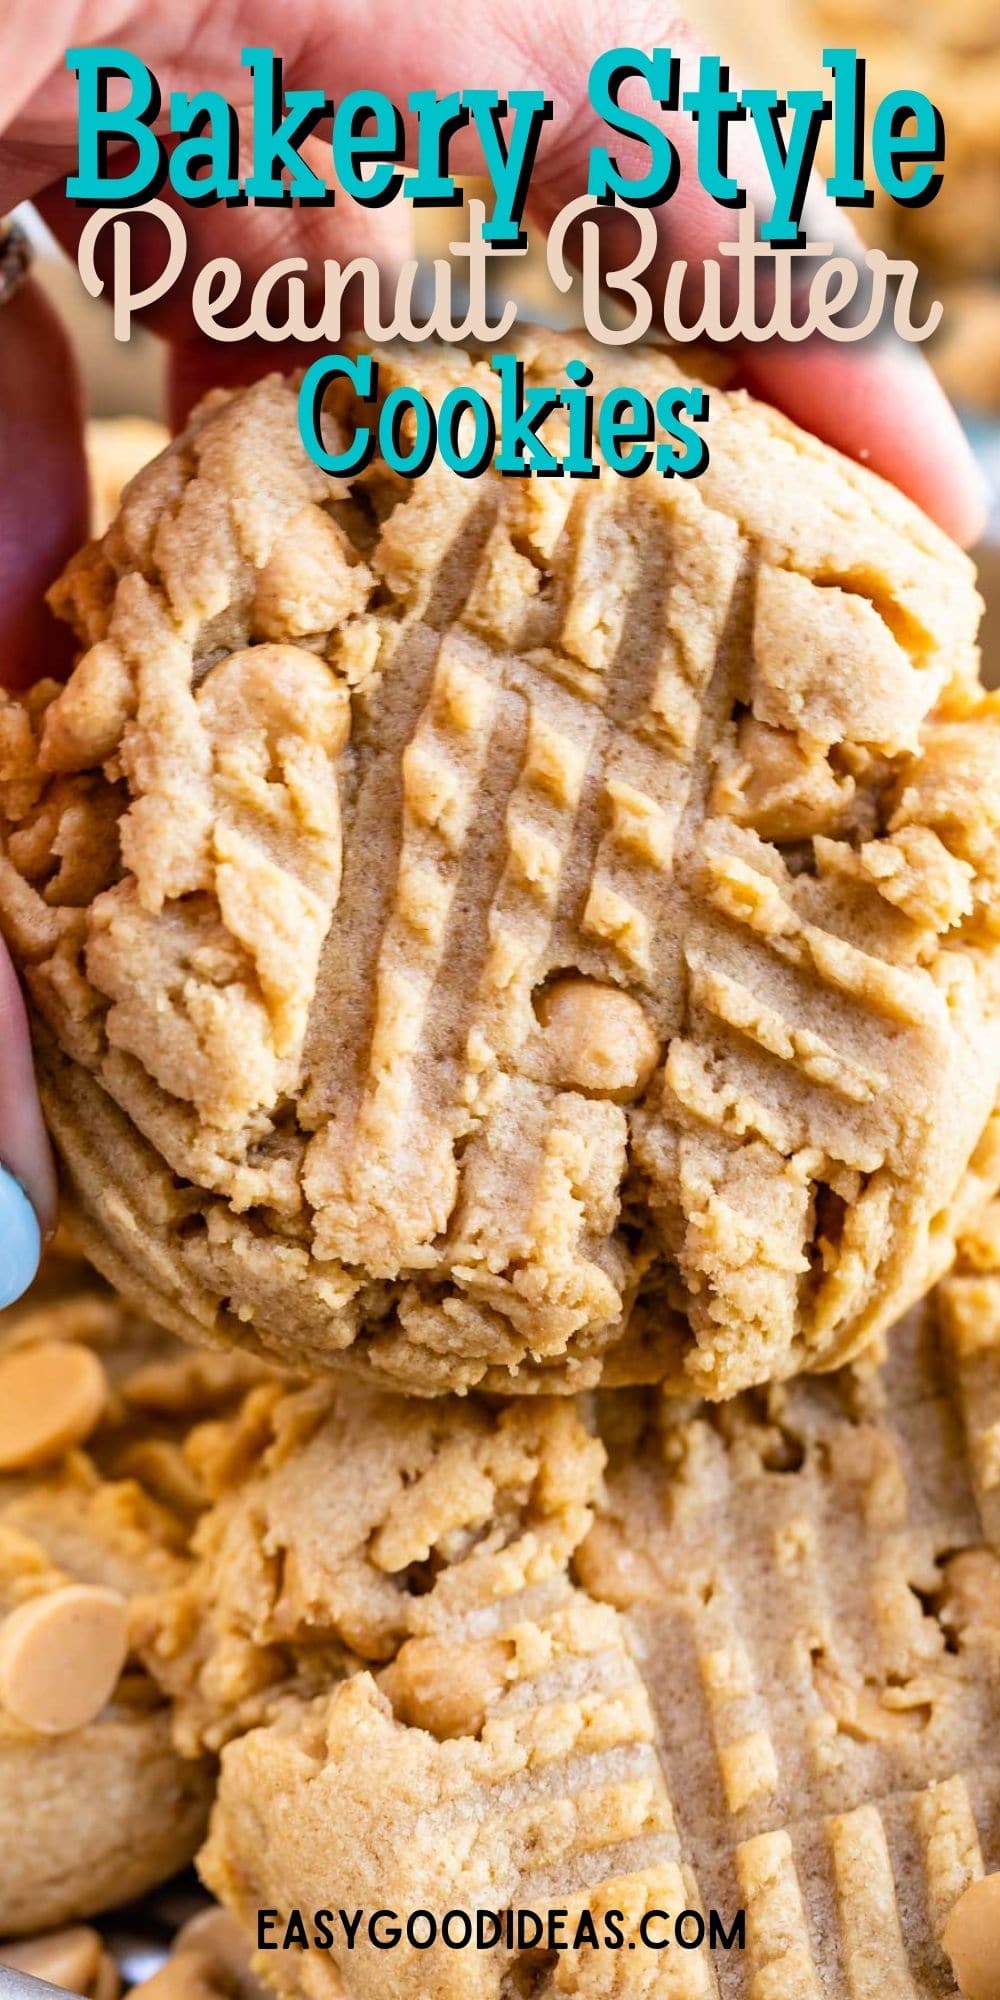 https://www.crazyforcrust.com/wp-content/uploads/2021/08/Bakery-Style-Peanut-Butter-Cookies.jpg